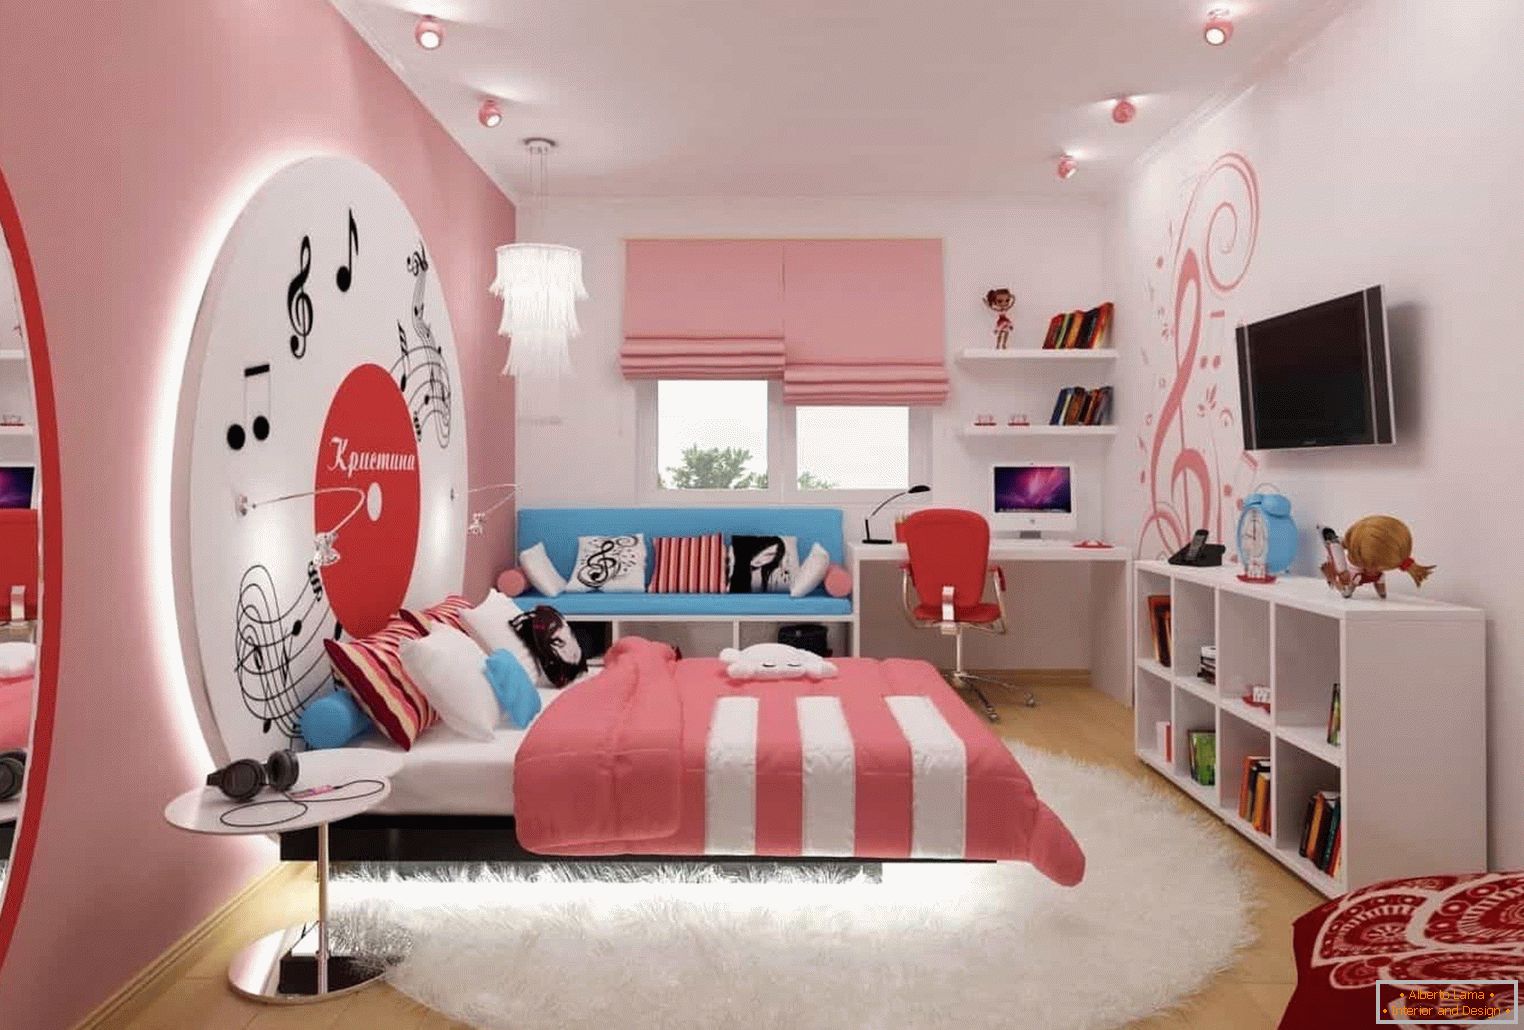 Light pink room